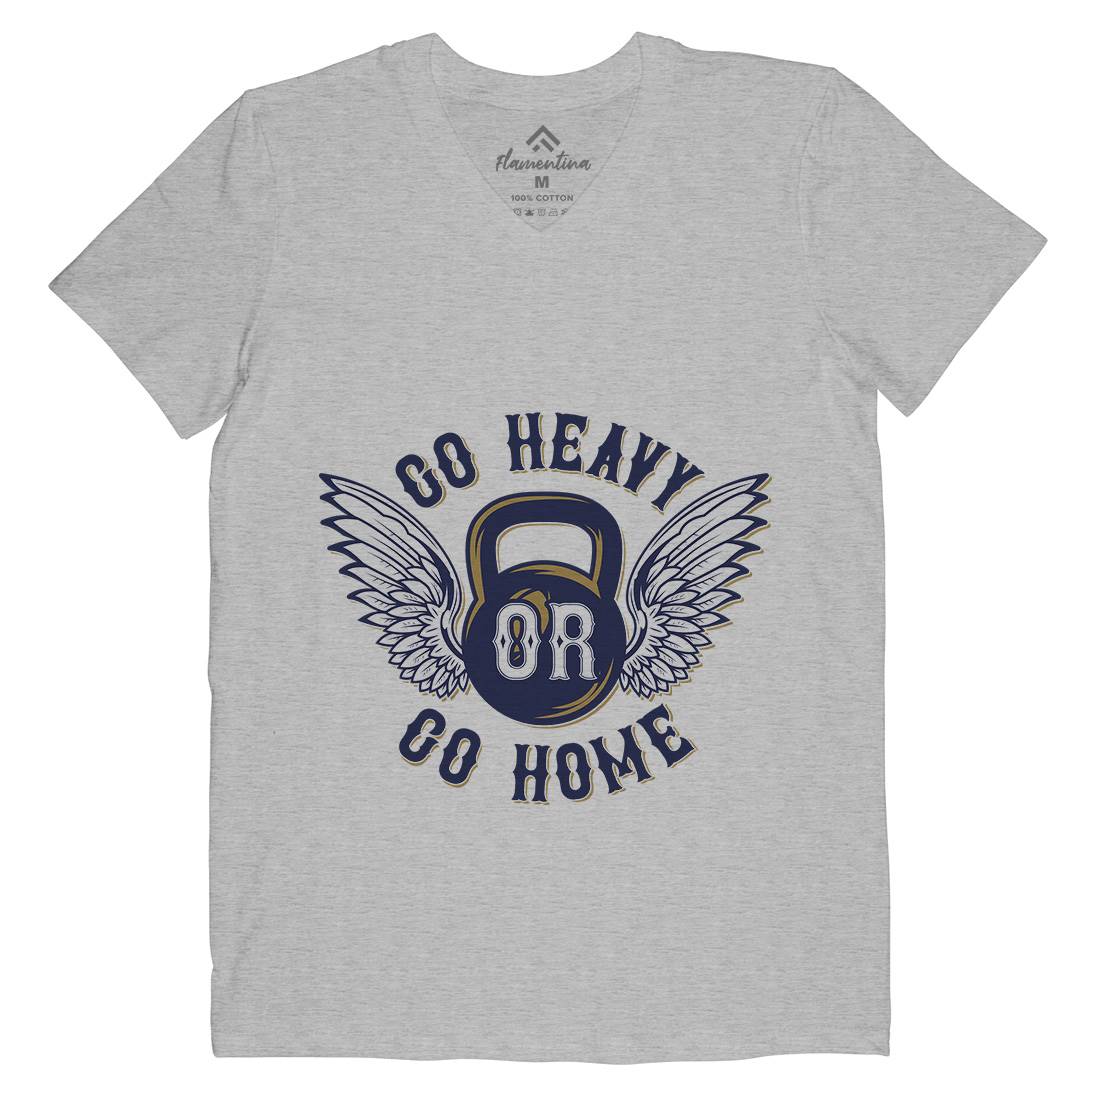 Heavy Mens V-Neck T-Shirt Gym B303